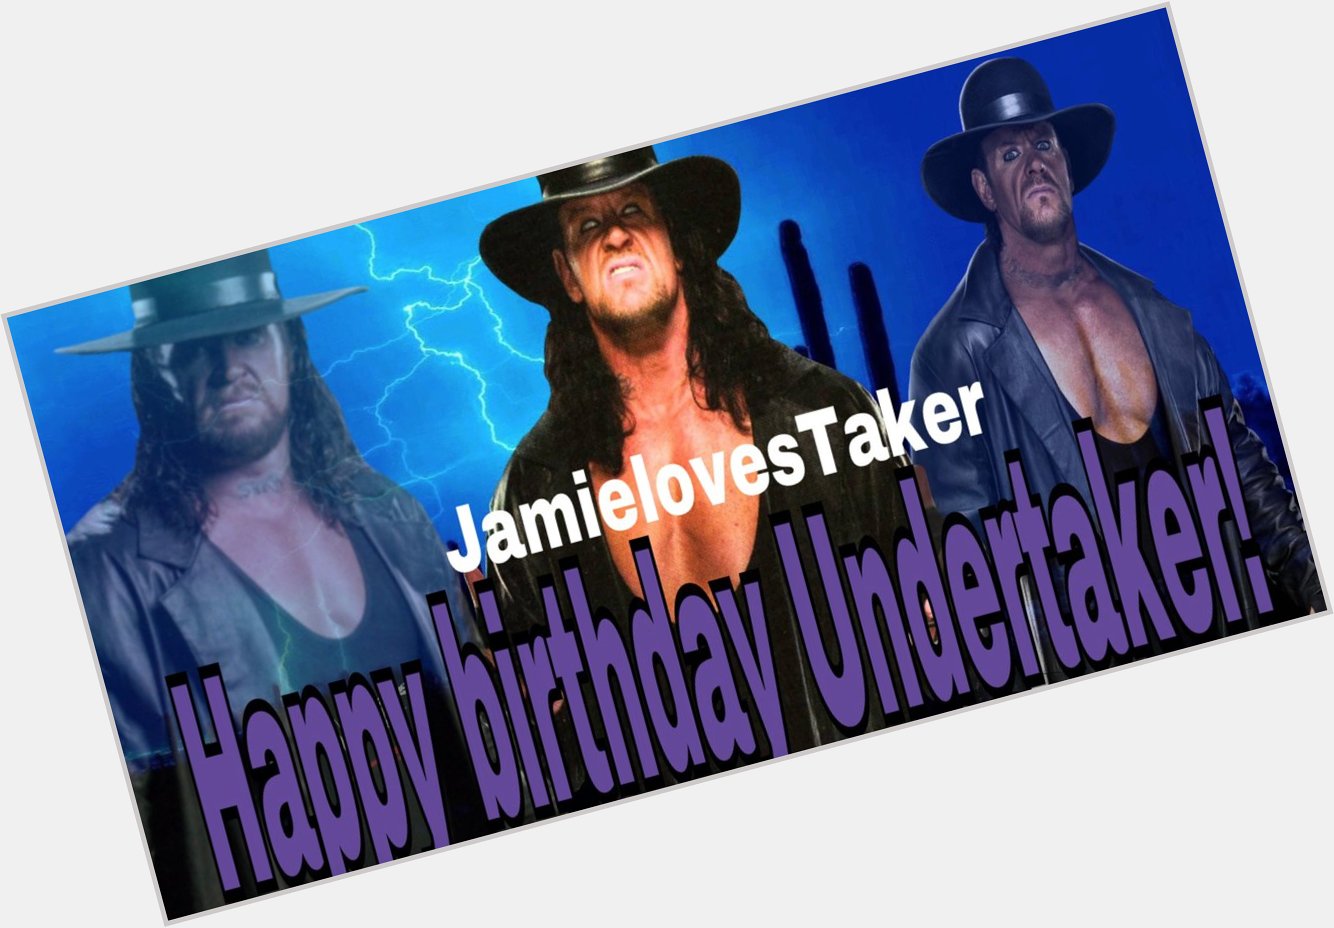 Happy birthday Undertaker!  